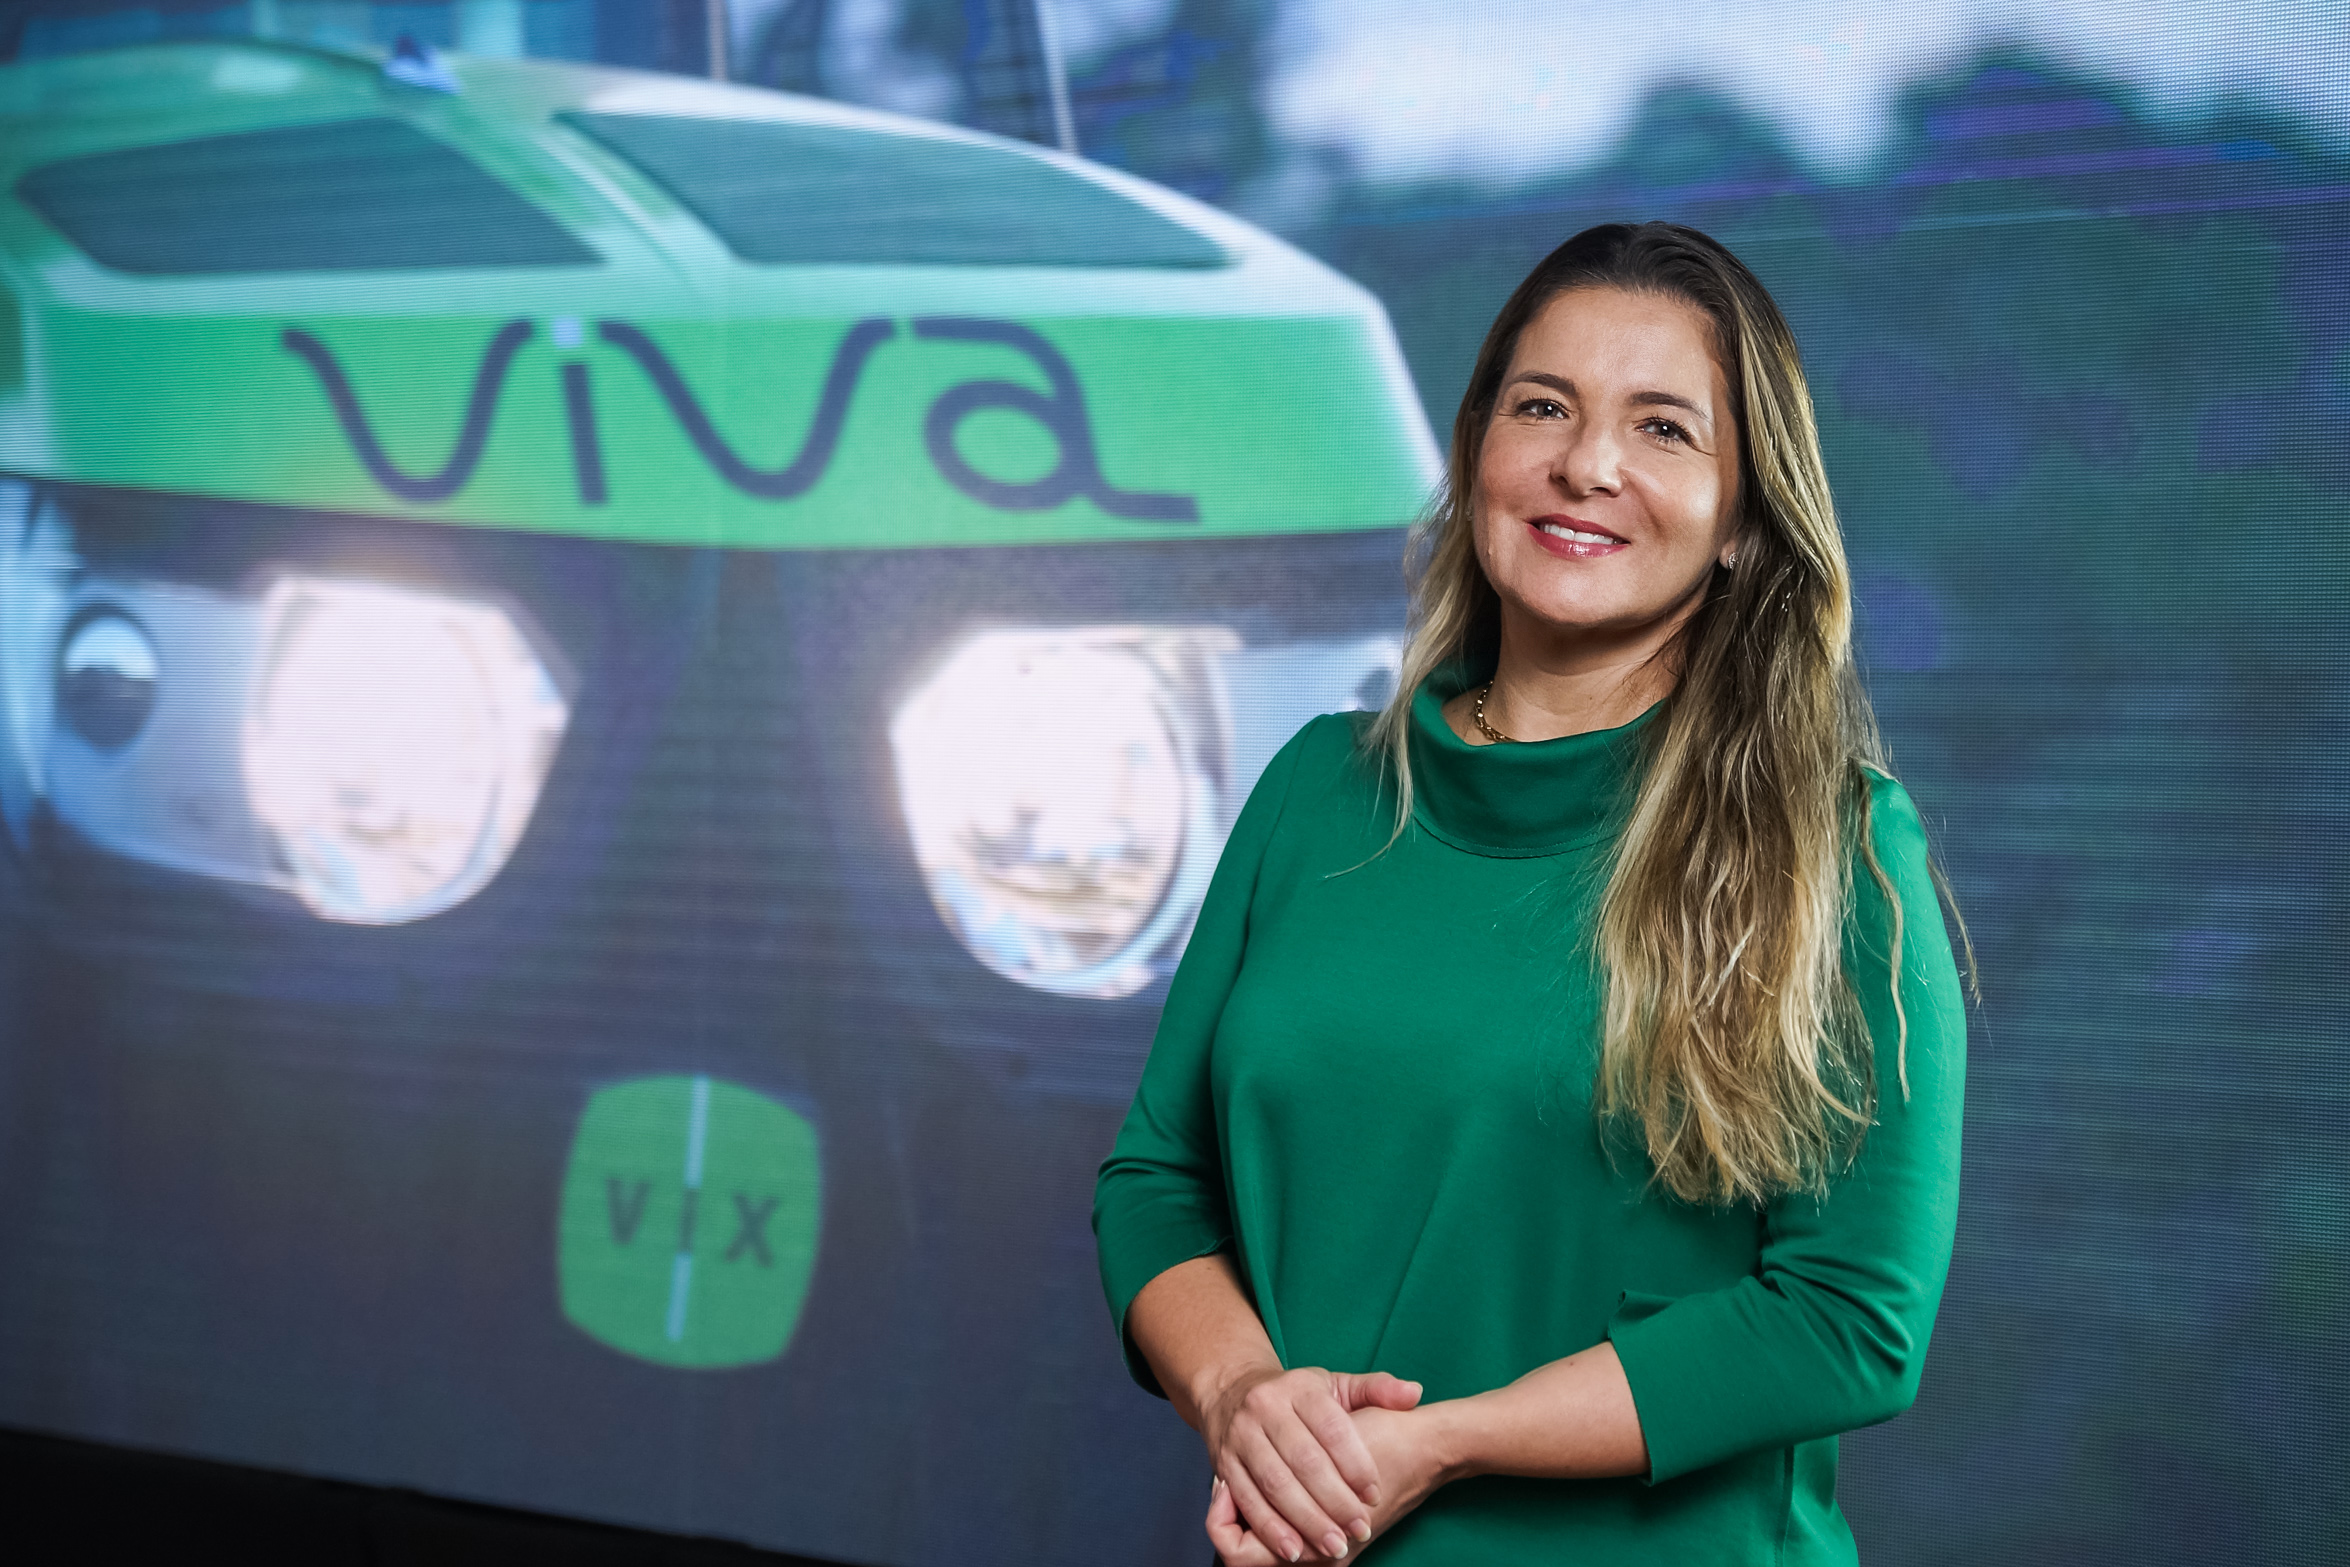 Primeira empresa de logística do Brasil a obter o selo Women on Board, Vix busca novas ideias para manter ritmo de crescimento até fora do país